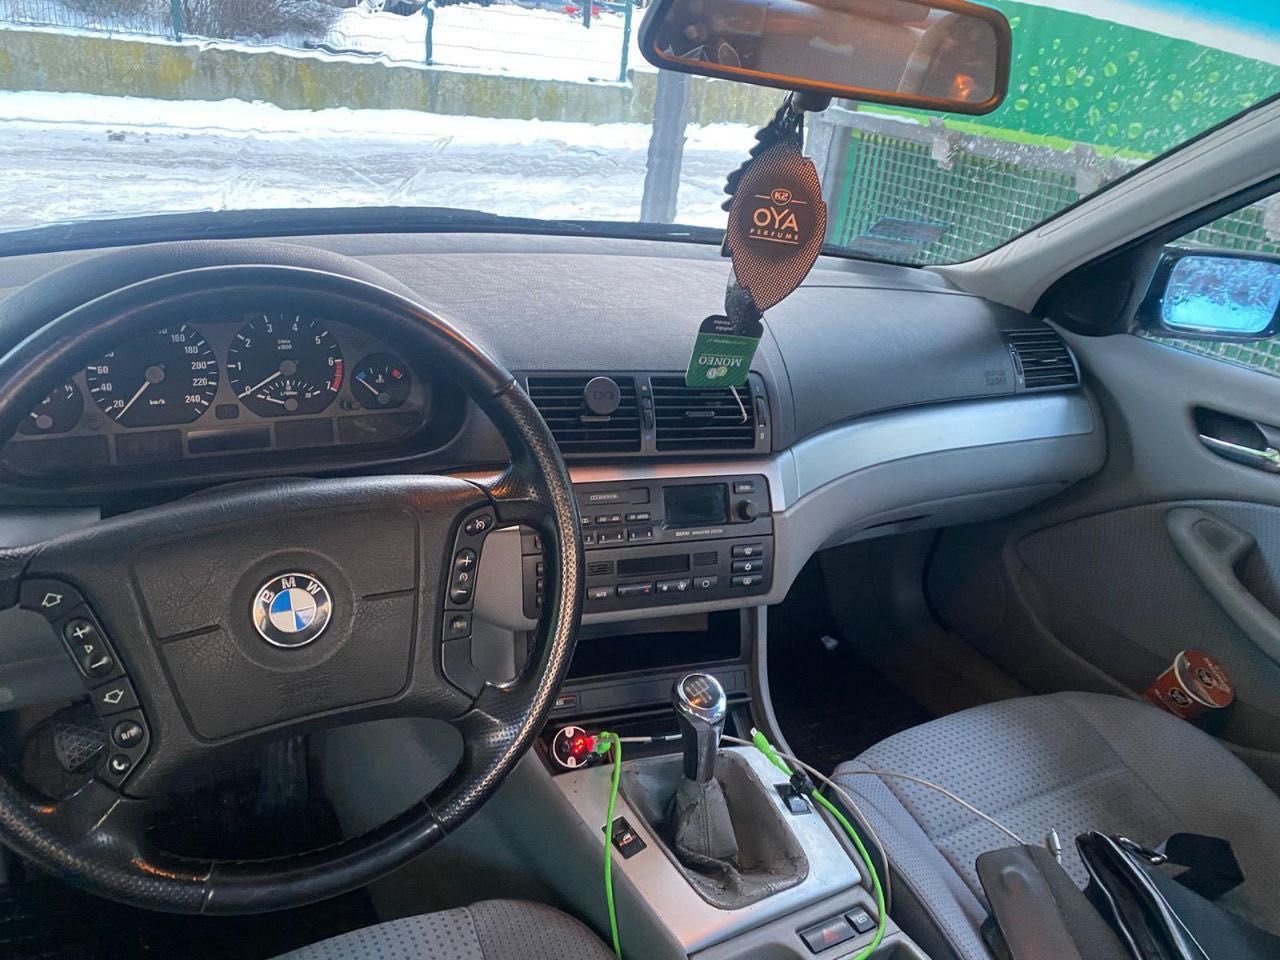 BMWe46 1.9 gas/benzyna